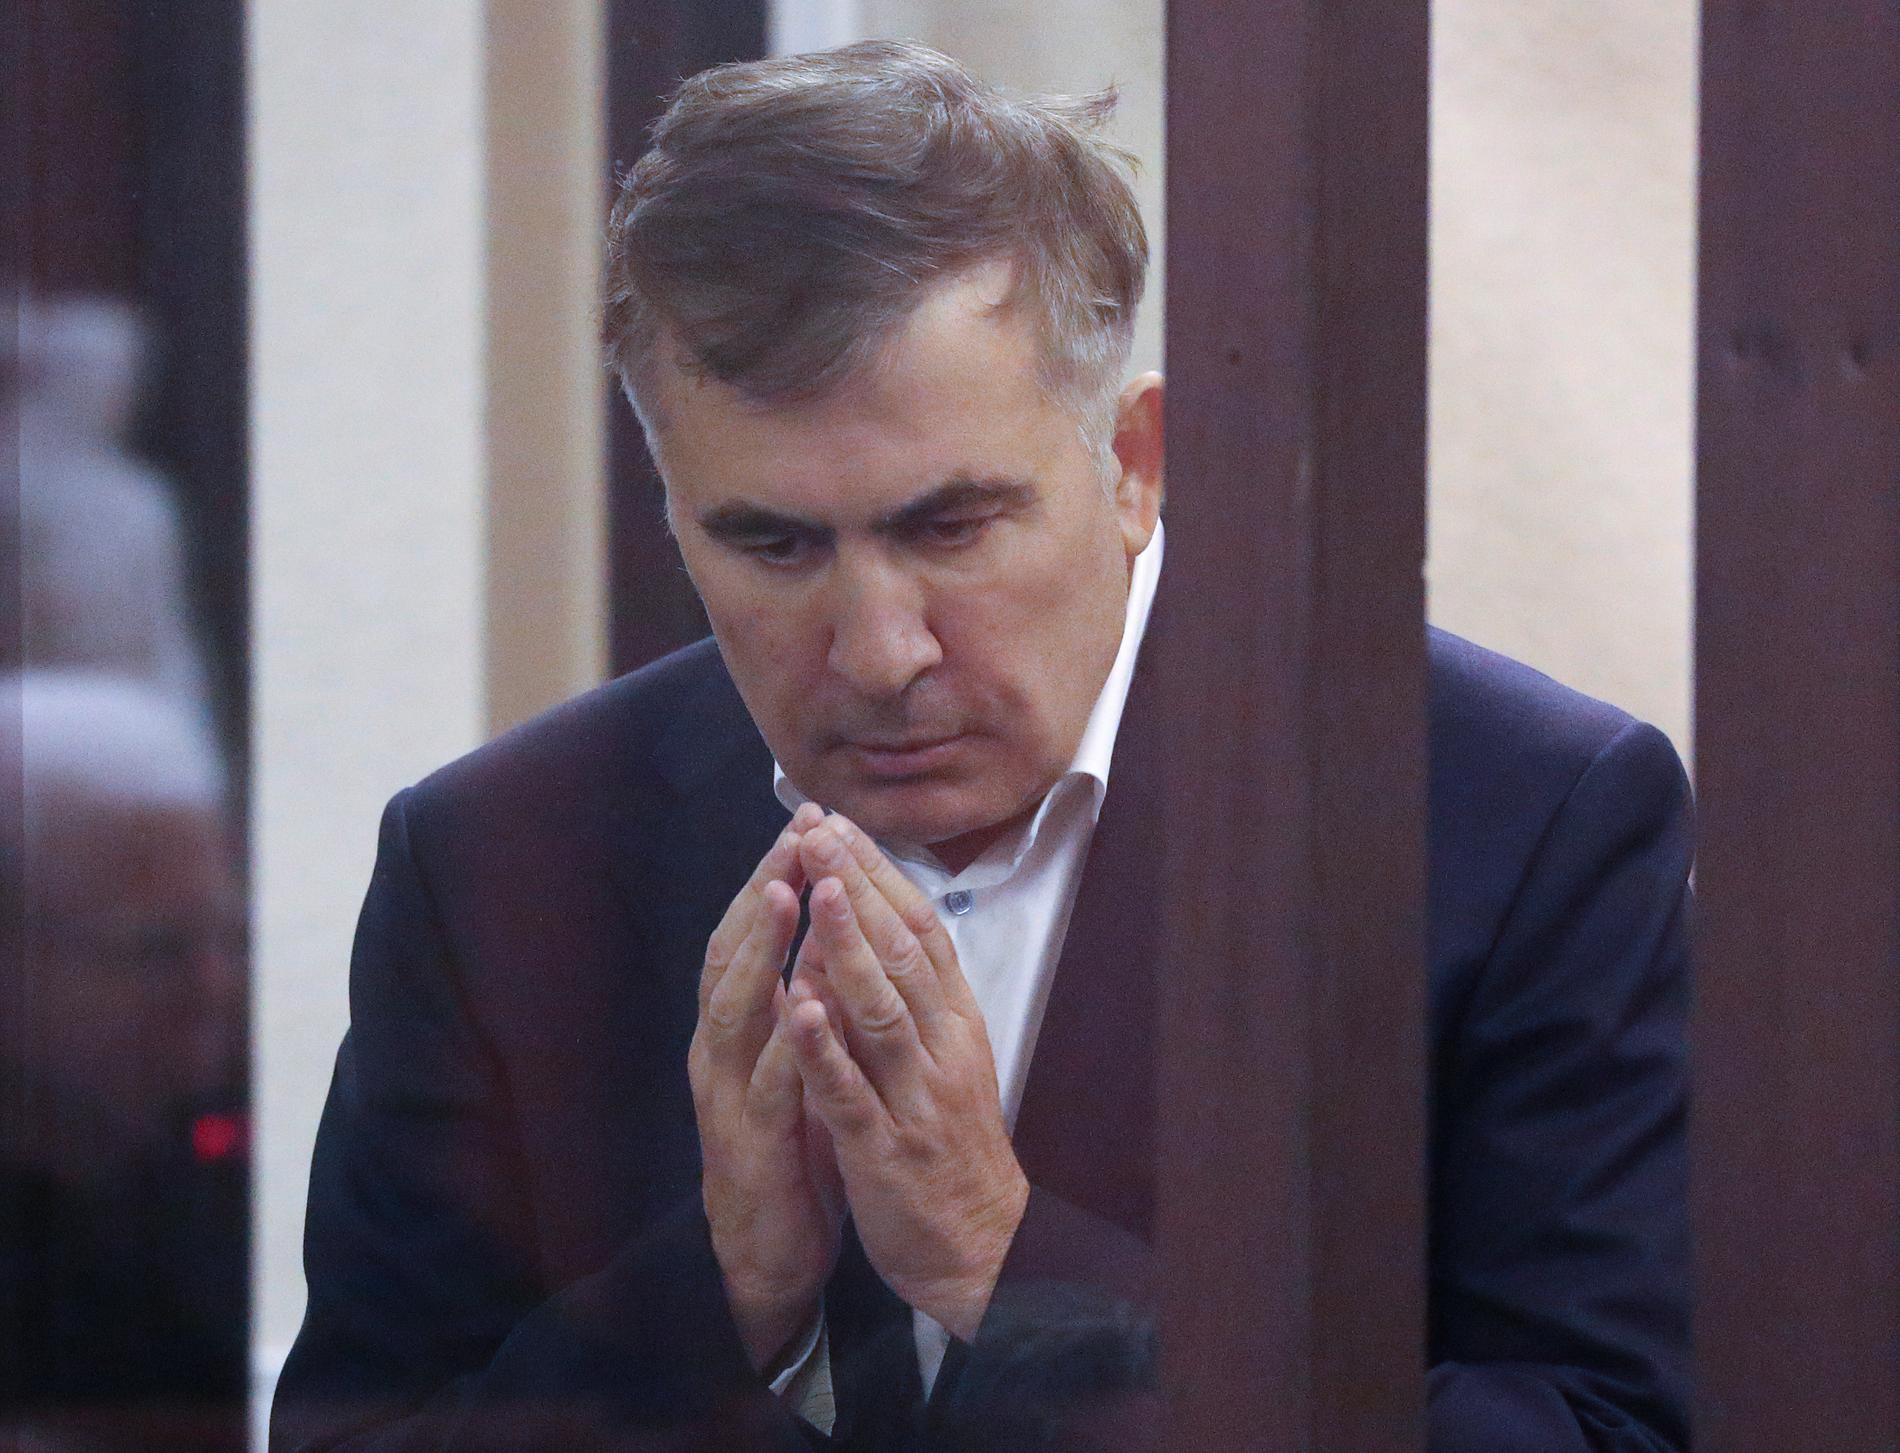 Georgiens tidigare president Michail Saakasjvili under rättegången 2021. Arkivbild.